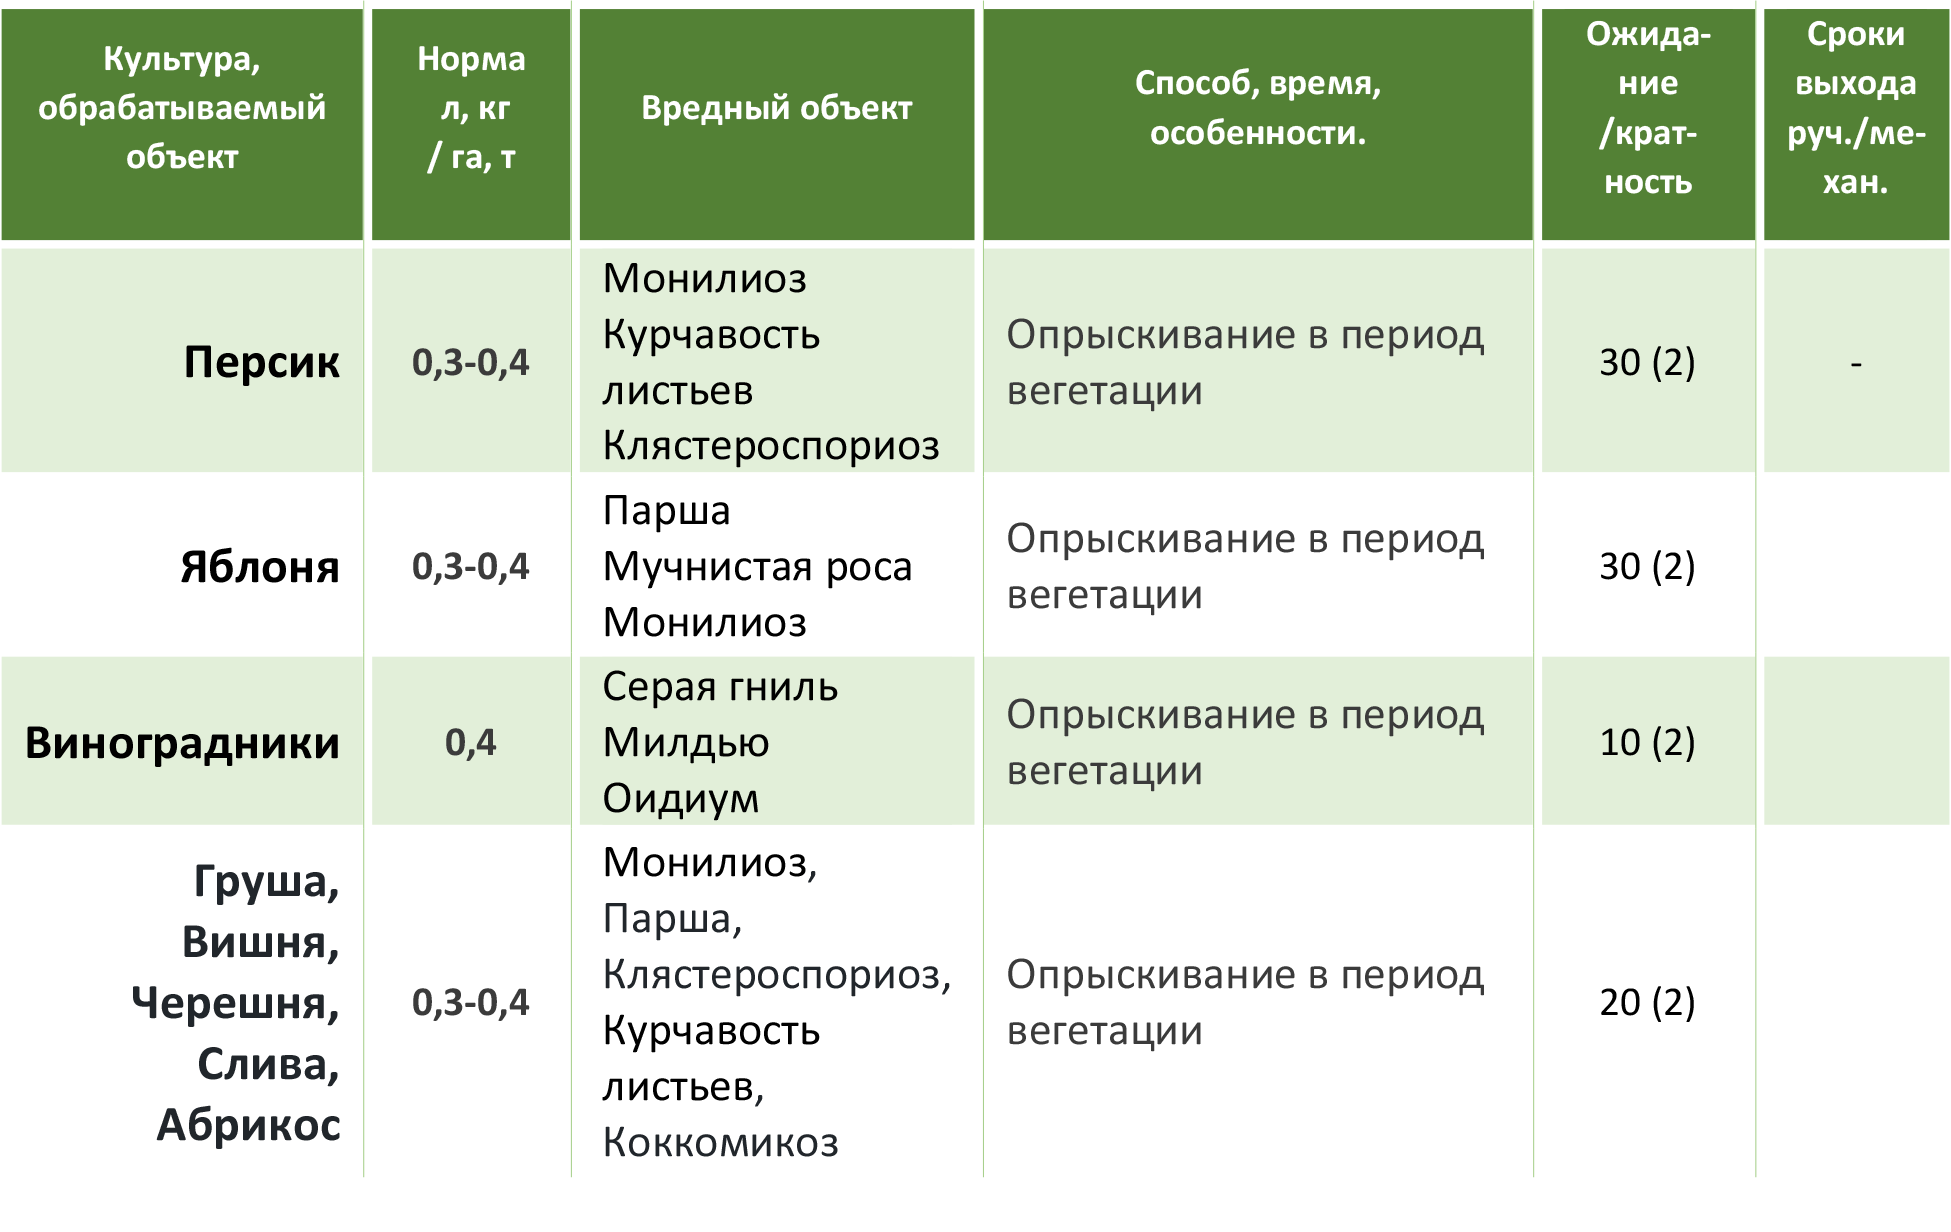 ᐉ фунгицид максим: инструкция по применению, отзывы о препарате, хранение - roza-zanoza.ru